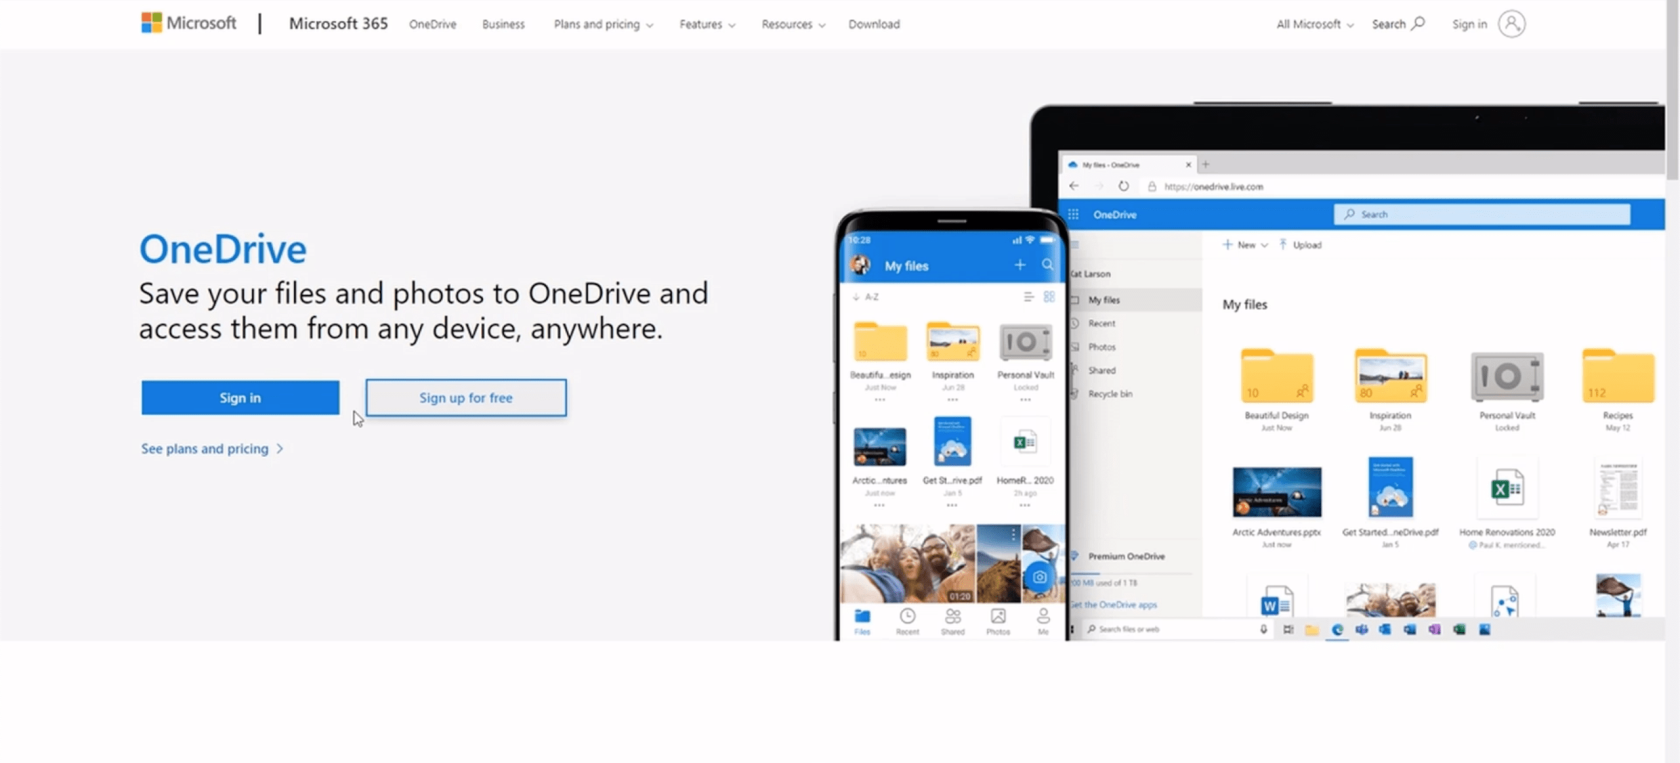 إعداد بيئة تطبيقات الطاقة: الاتصال بـ OneDrive و Google Drive